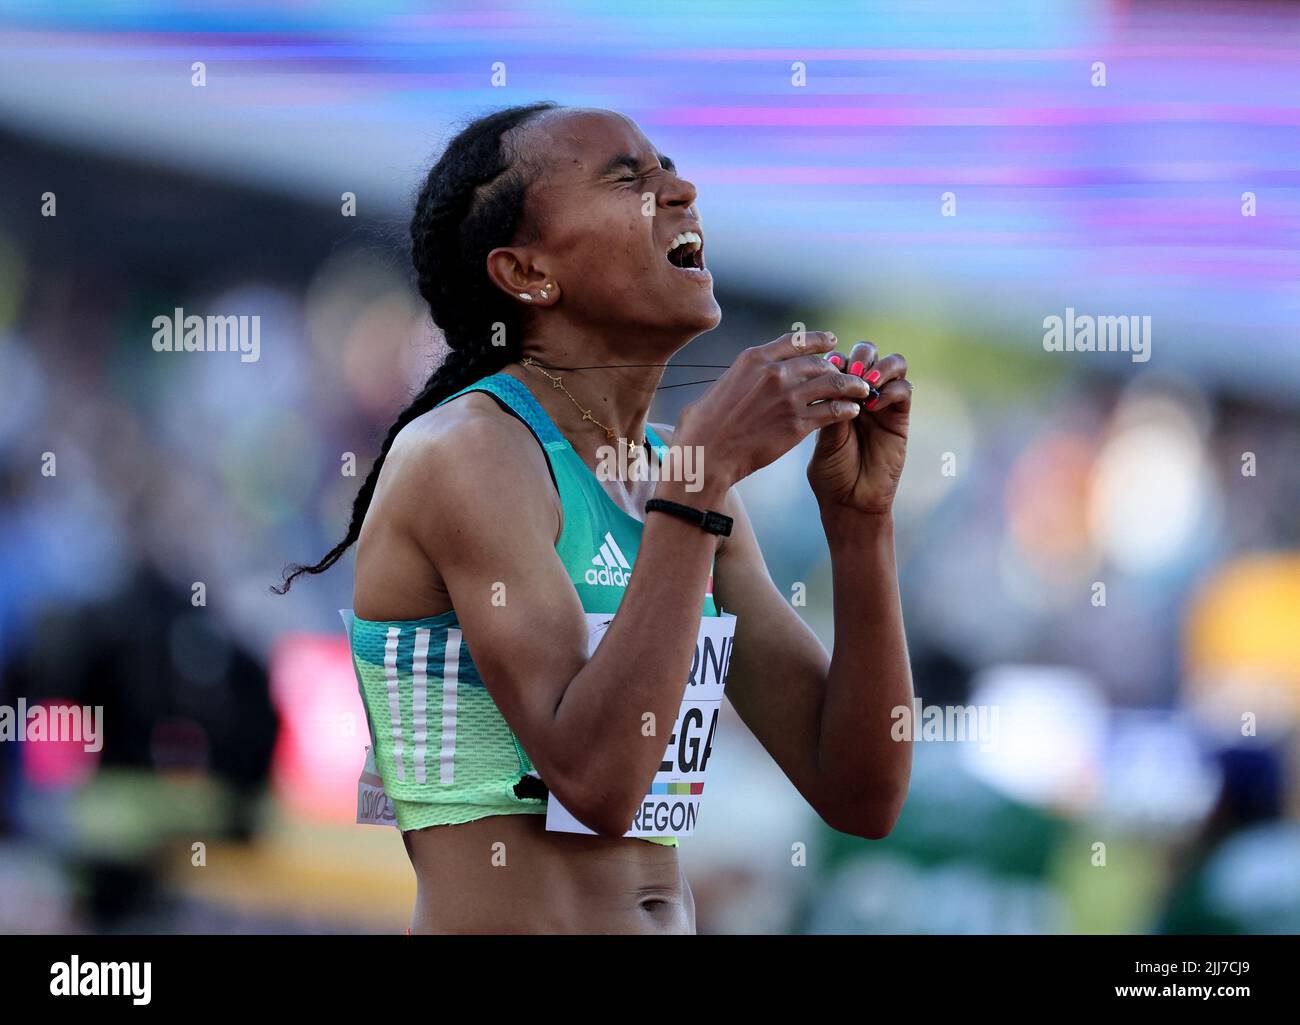 Leichtathletik - Leichtathletik-Weltmeisterschaften - 5000 Meter der Frauen - Finale - Hayward Field, Eugene, Oregon, USA - 23. Juli 2022 die Äthiopierin Gudaf Tsegay feiert nach dem Sieg im 5000 Meter langen Finale der Frauen REUTERS/Lucy Nicholson Stockfoto